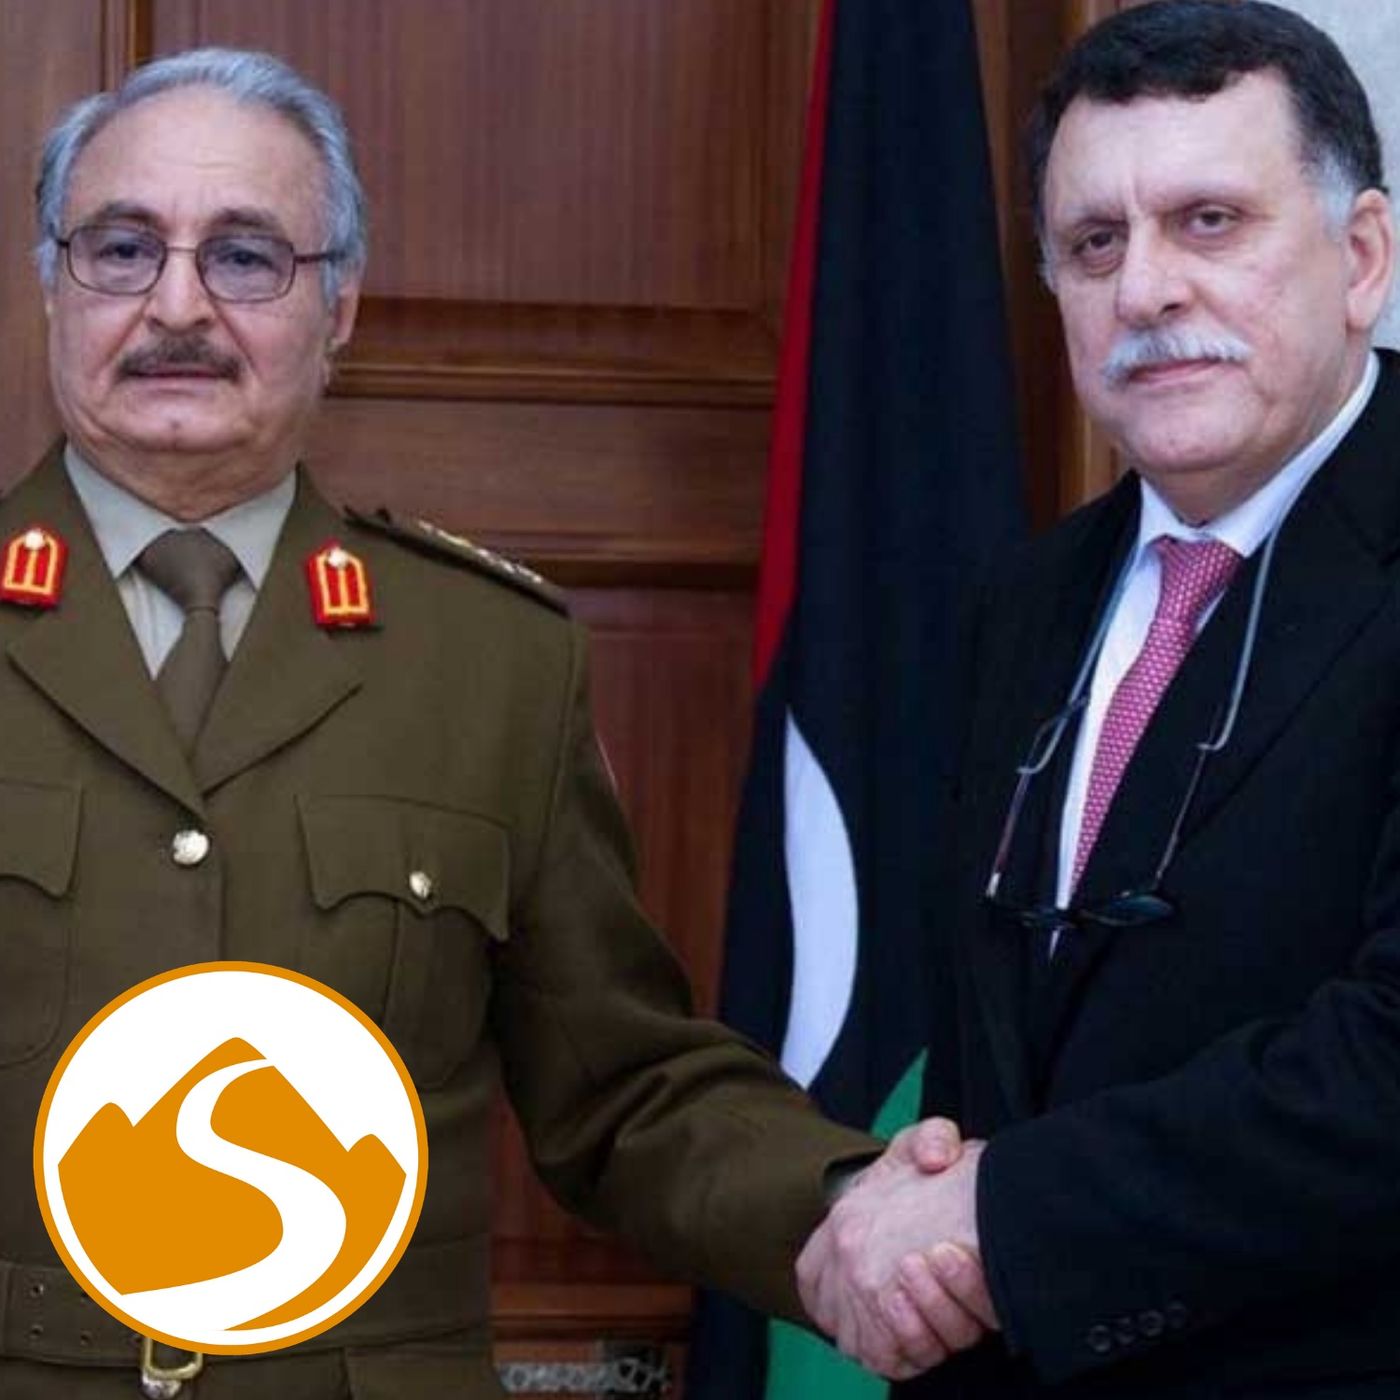 CB - Libia: lo stallo di un Paese diviso a metà con Francesco Petronella